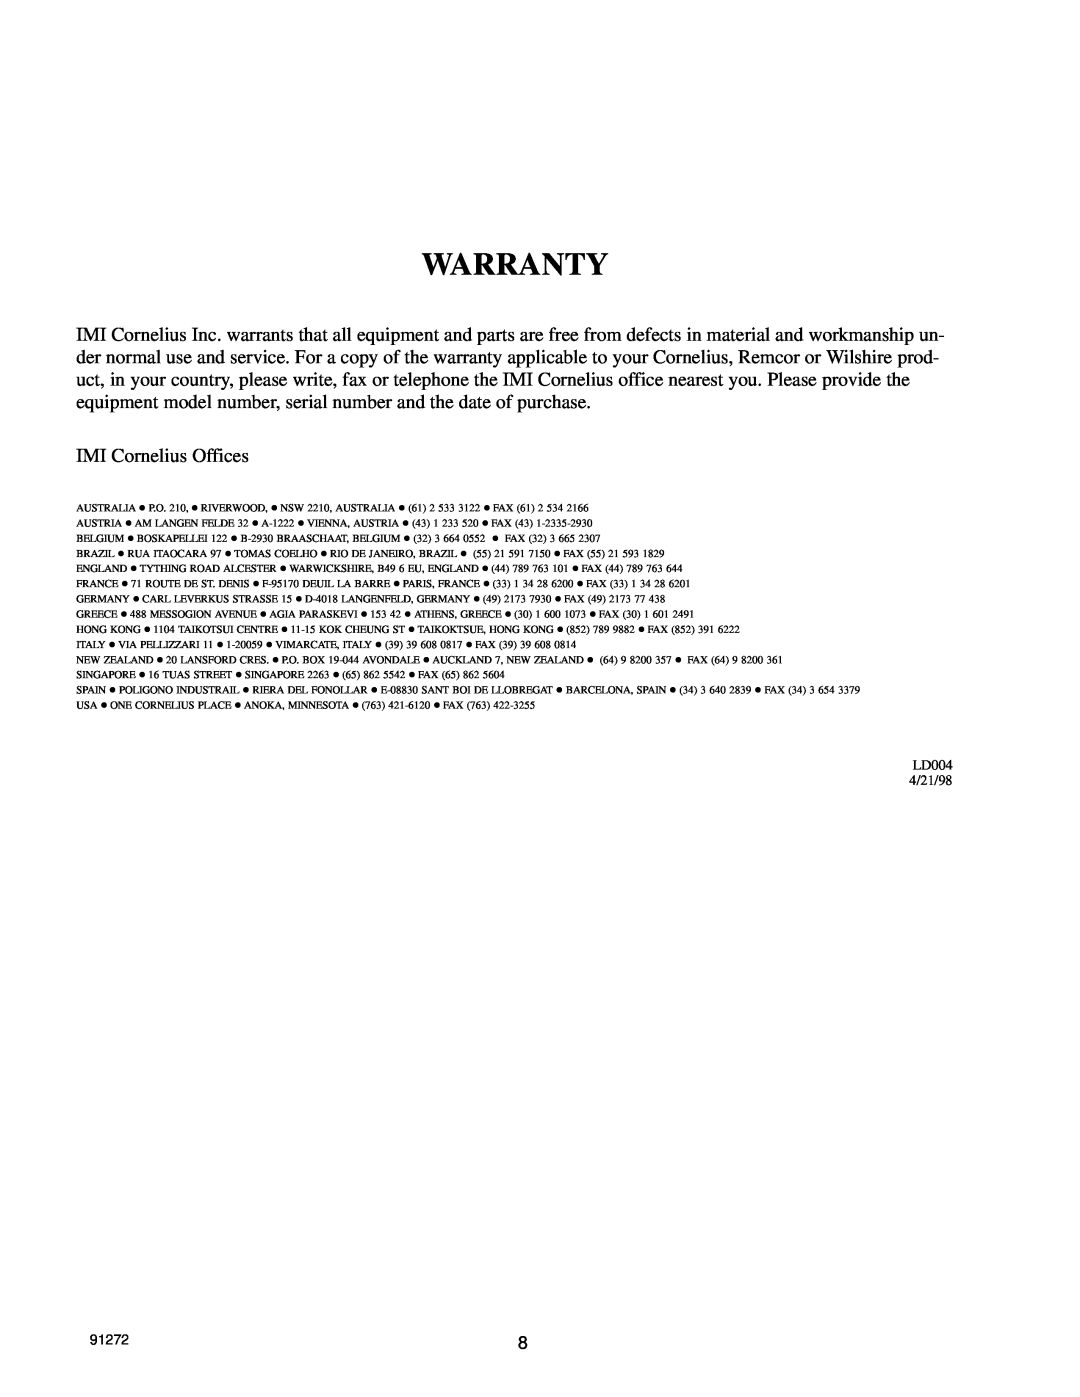 Cornelius CH 551, CH550 manual Warranty, IMI Cornelius Offices, LD004 4/21/98, 91272 